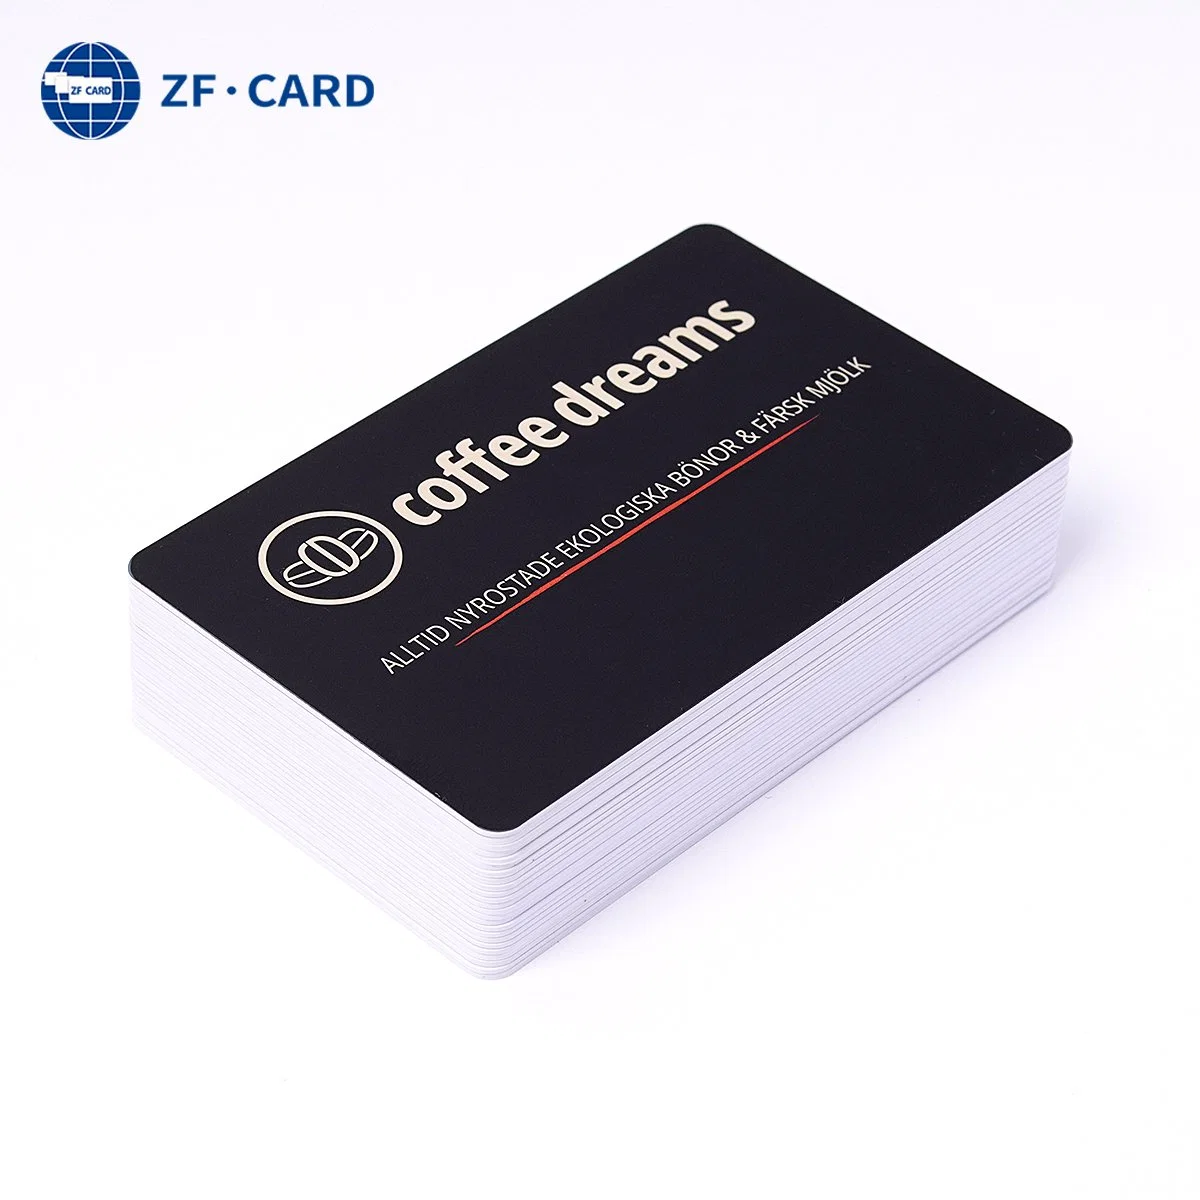 De alta calidad de la tarjeta personalizada Samrt 13.56MHz Mifare (R) Classic 1K de la tarjeta RFID tarjeta NFC tarjeta plástica